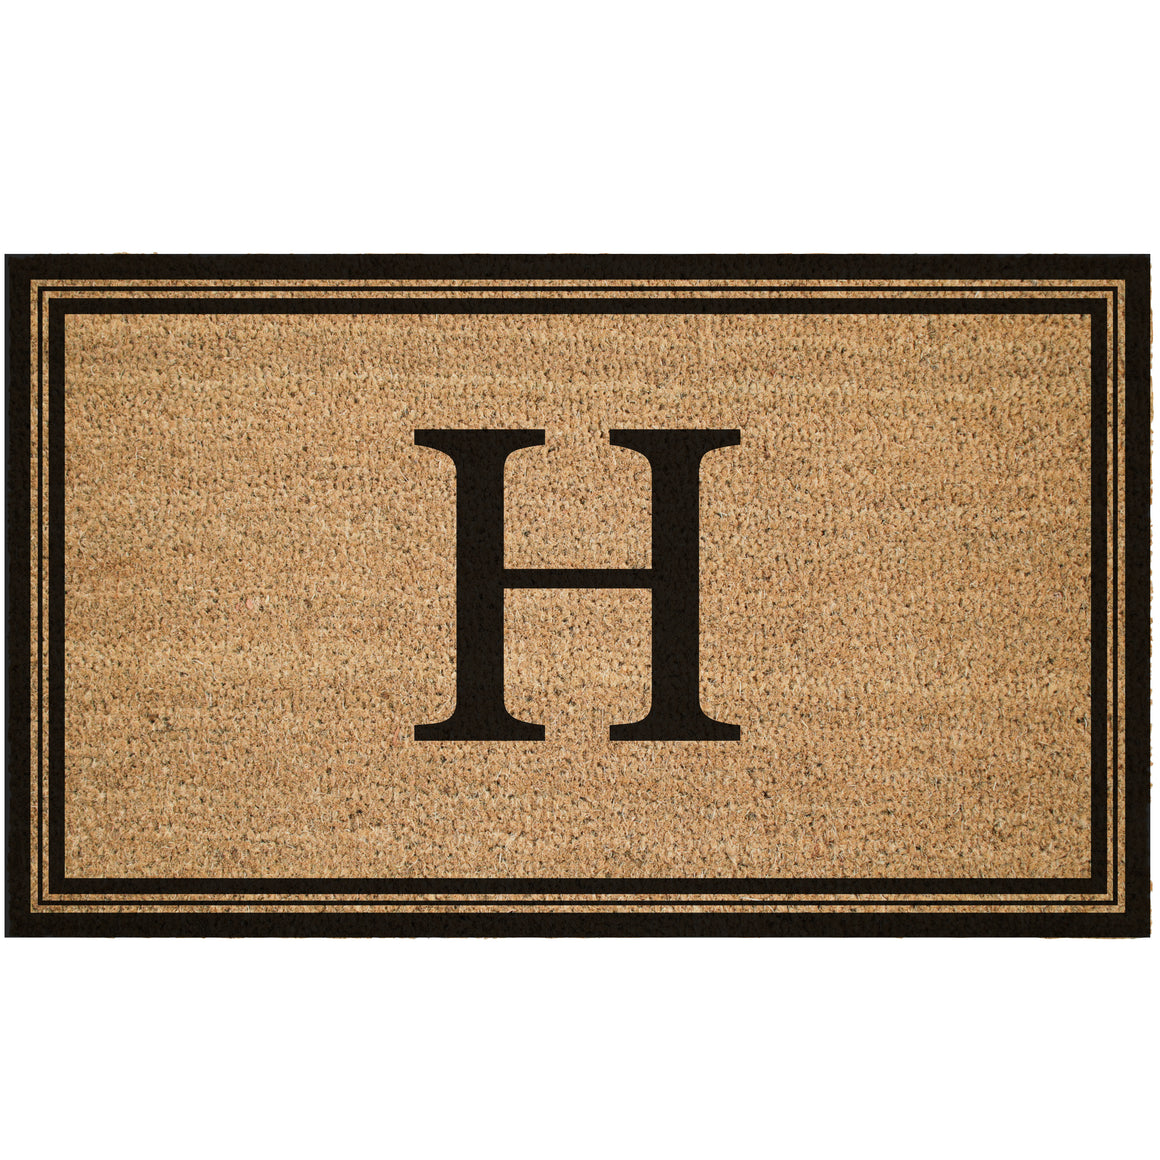 Custom Monogram With Border Coir Doormat